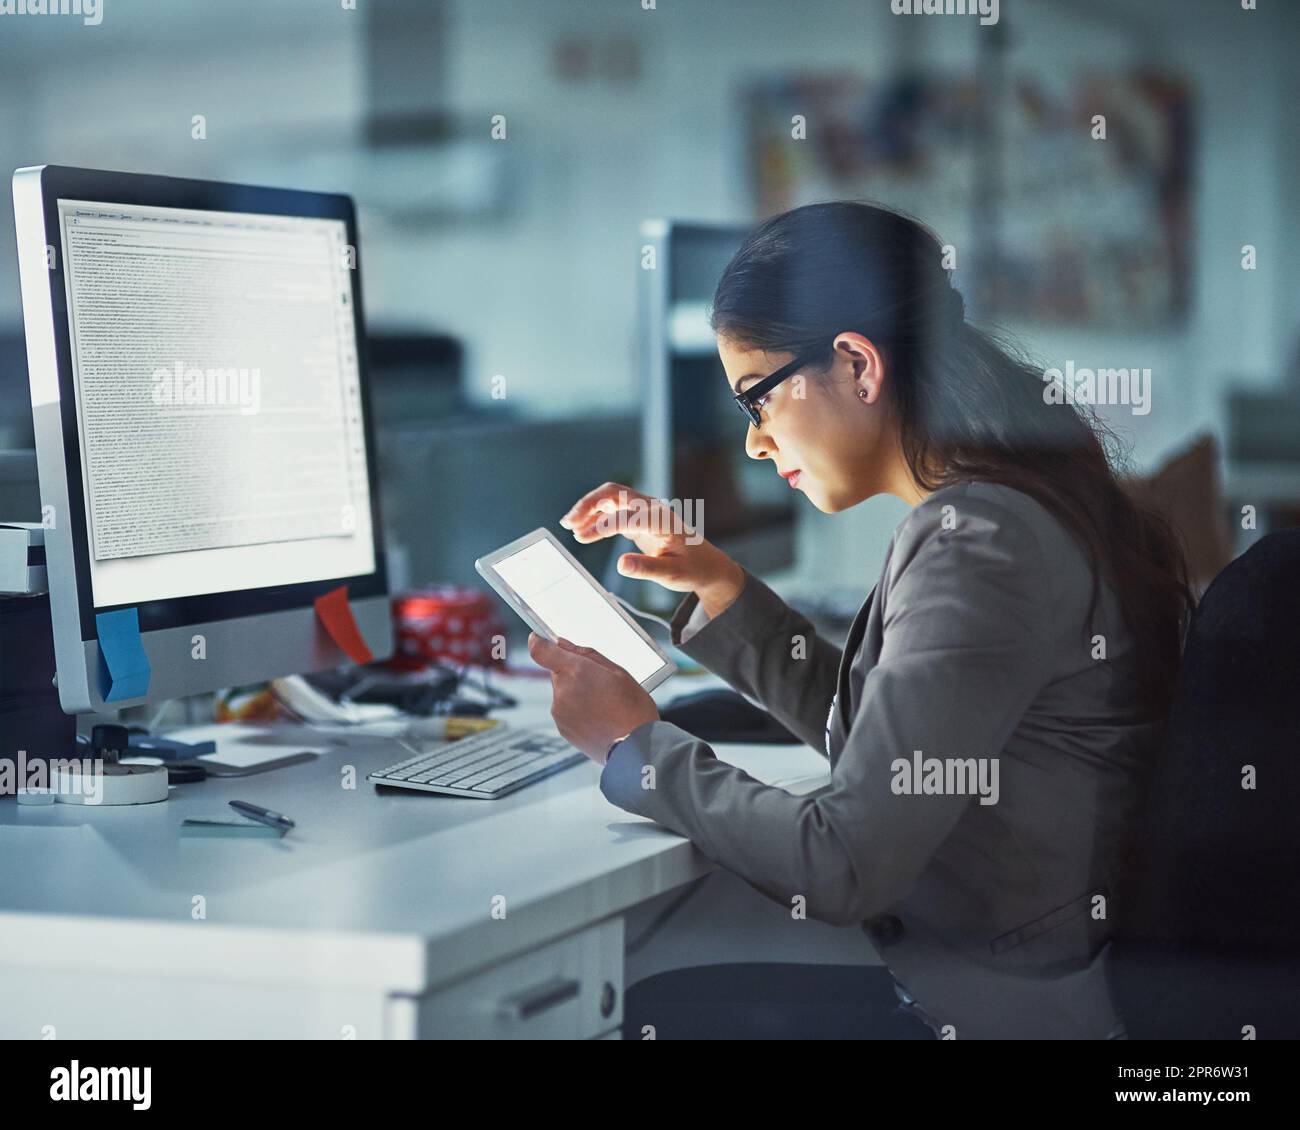 En ligne et au travail. Photo d'une jeune femme d'affaires travaillant tard au bureau. Banque D'Images